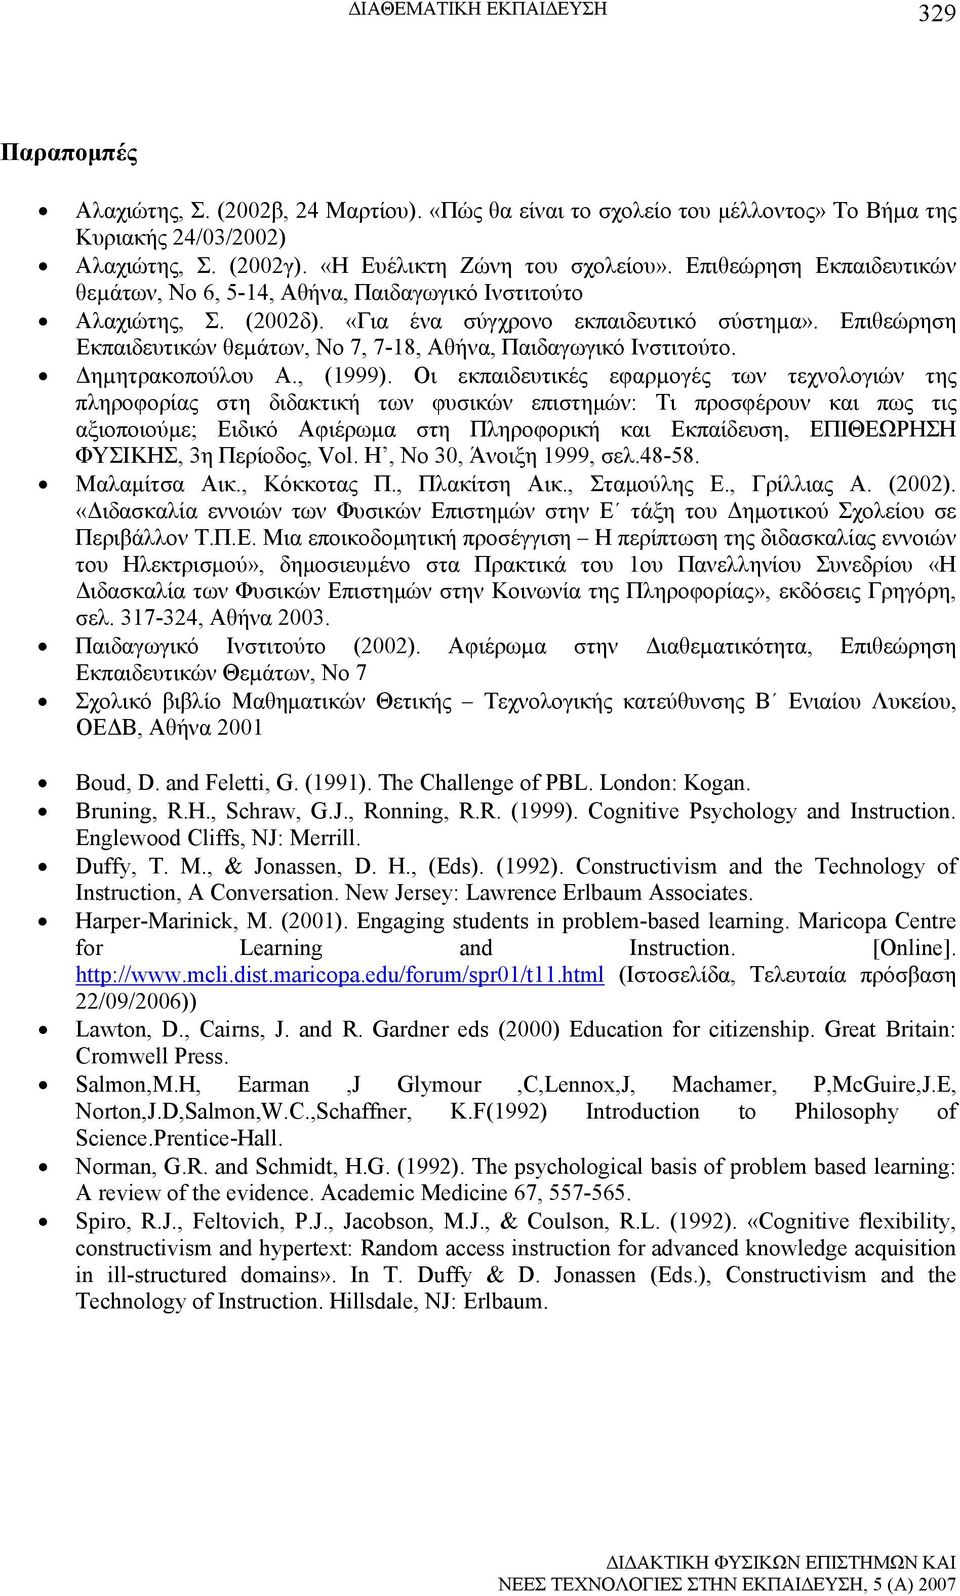 Επιθεώρηση Εκπαιδευτικών θεµάτων, Νο 7, 7-18, Αθήνα, Παιδαγωγικό Ινστιτούτο. Δηµητρακοπούλου Α., (1999).